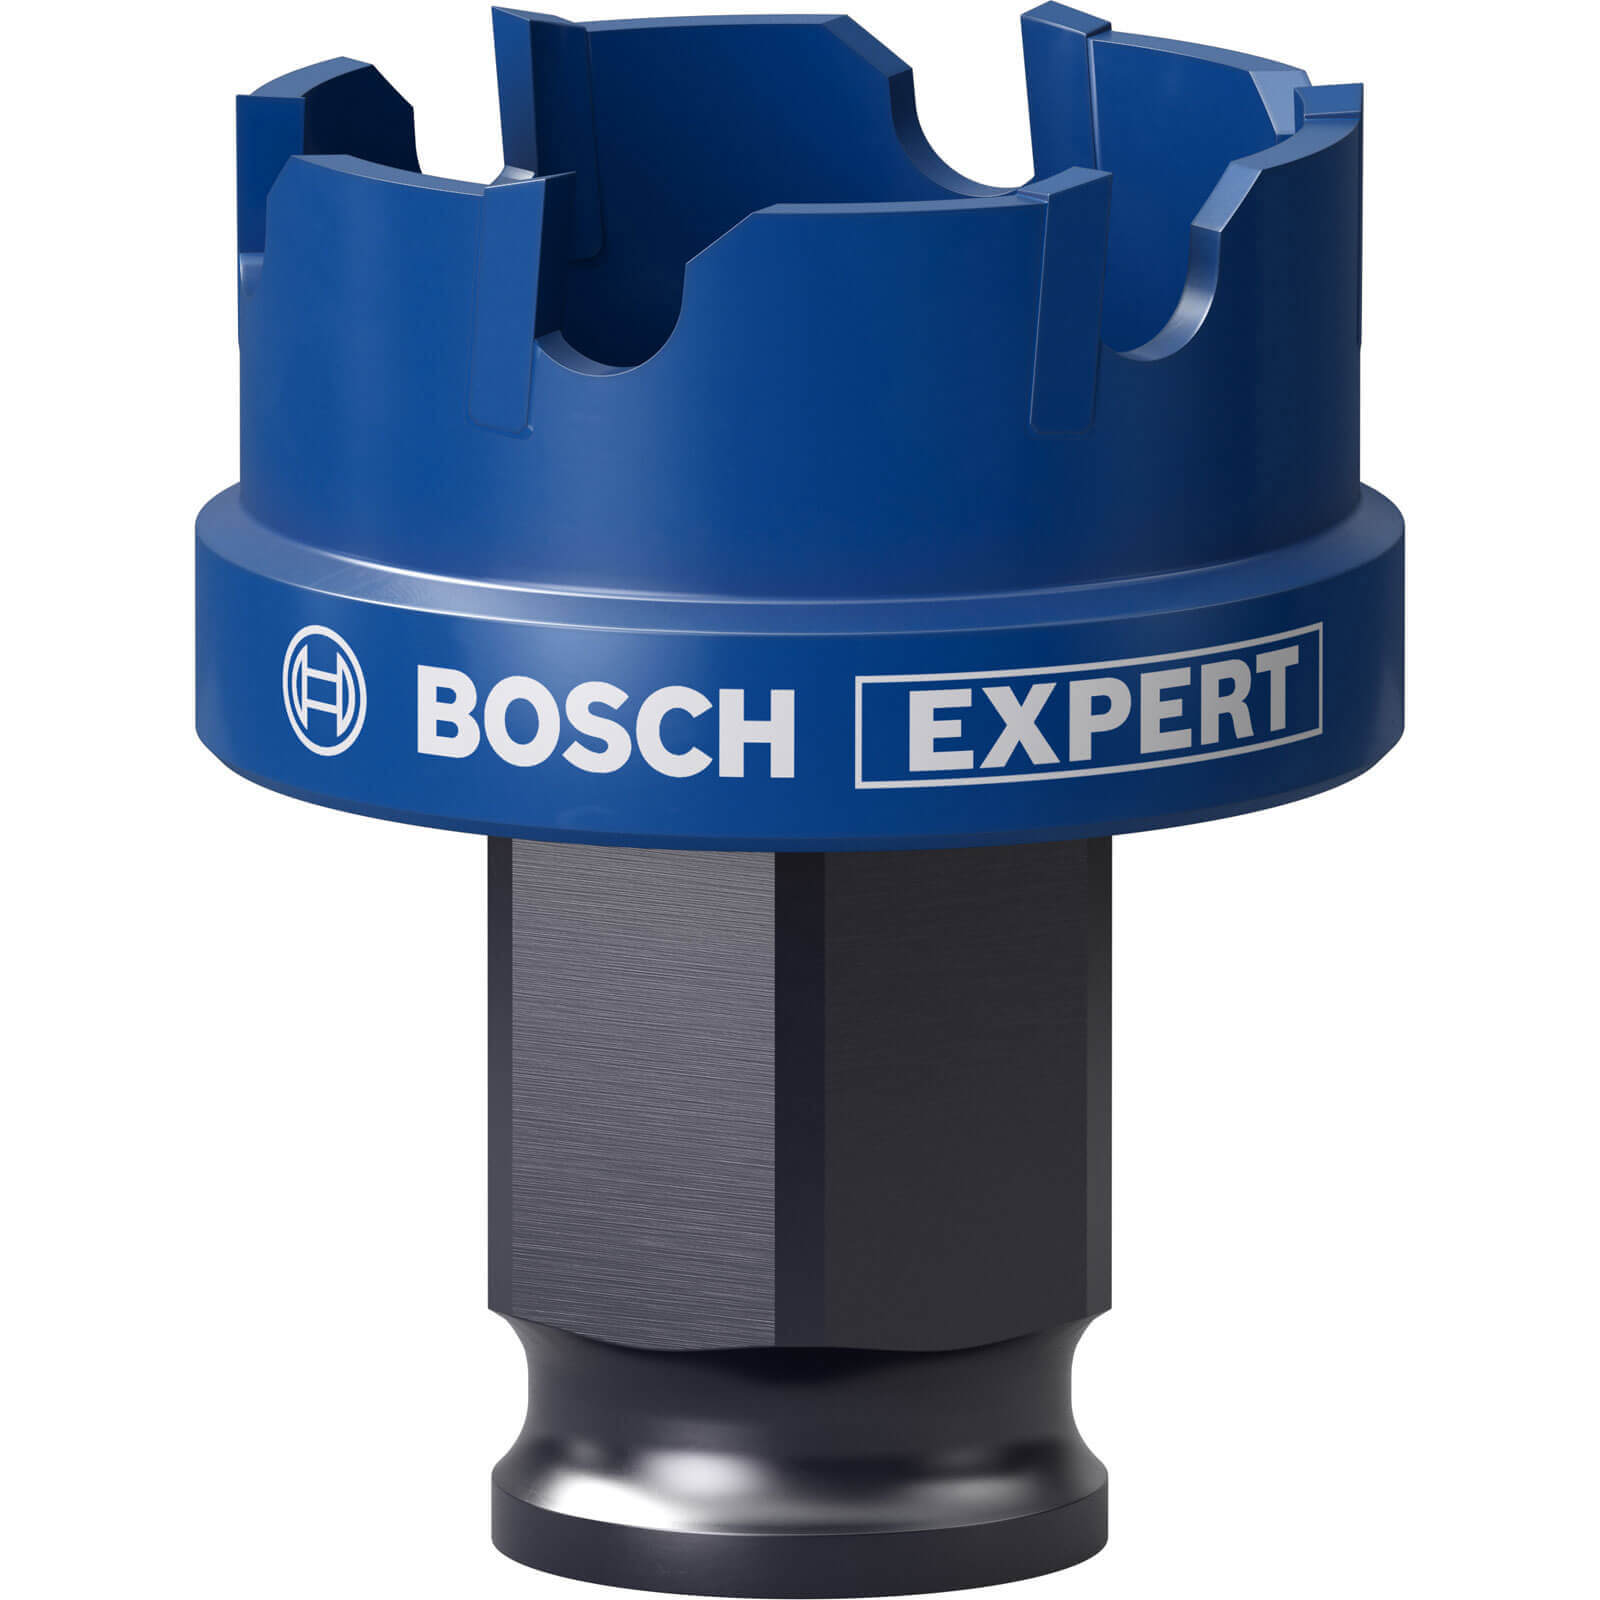 Bosch Expert Carbide Sheet Metal Hole Saw 32mm